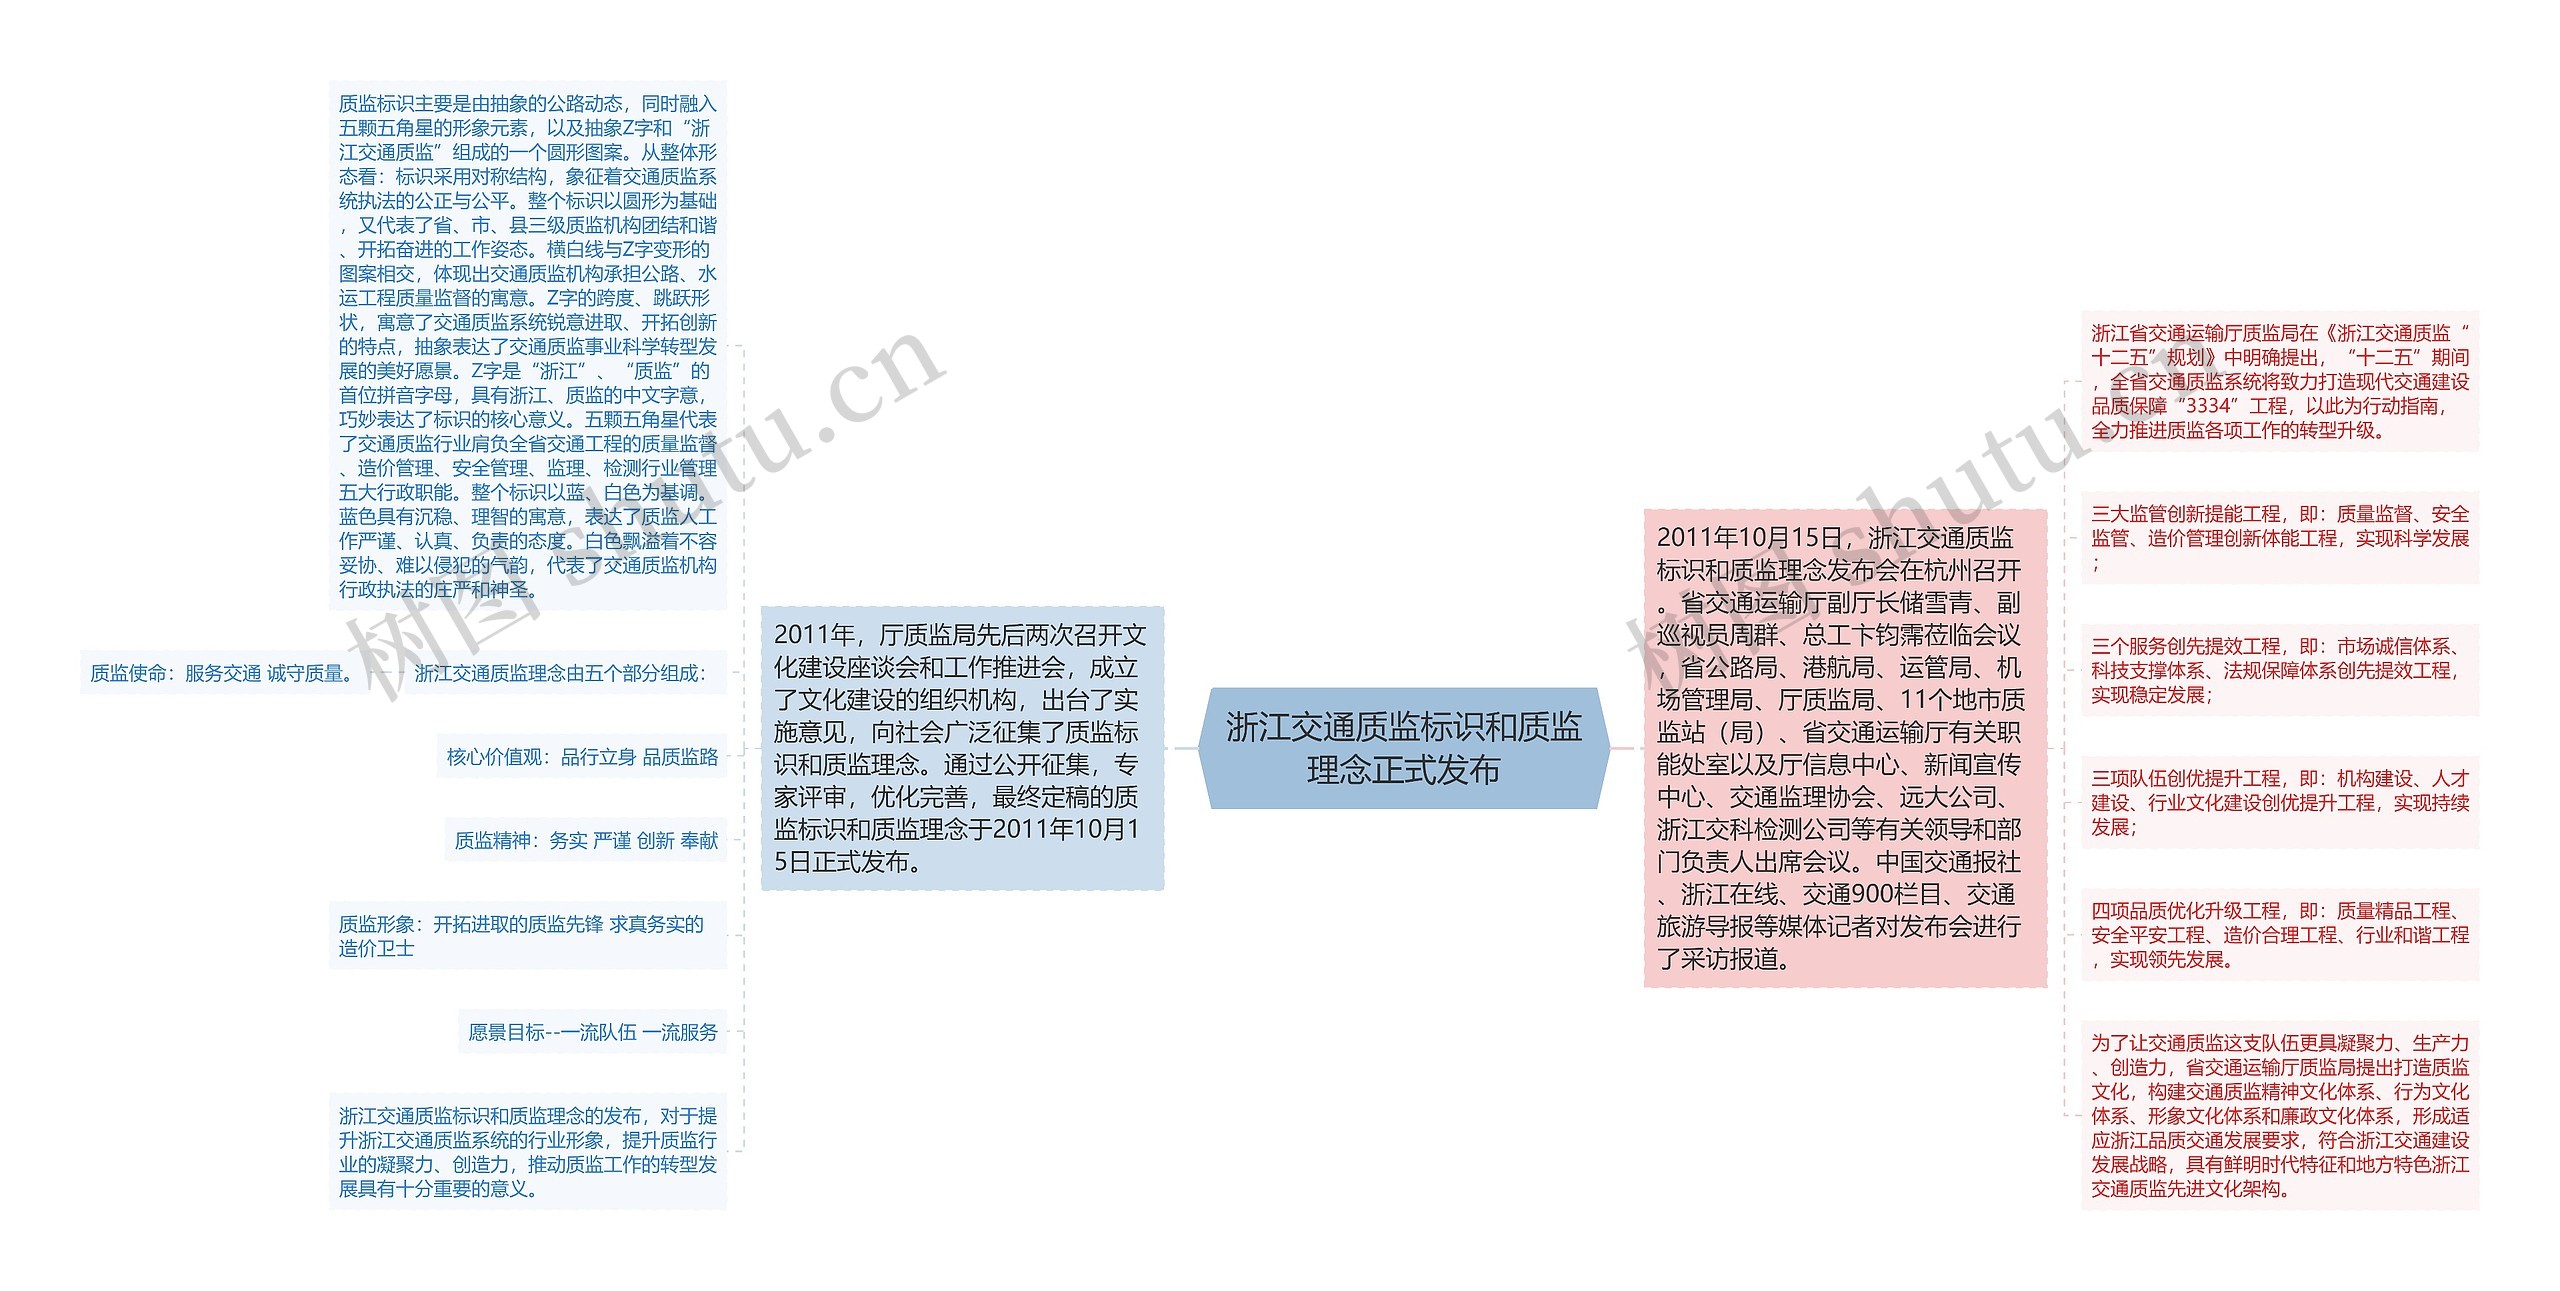 浙江交通质监标识和质监理念正式发布思维导图